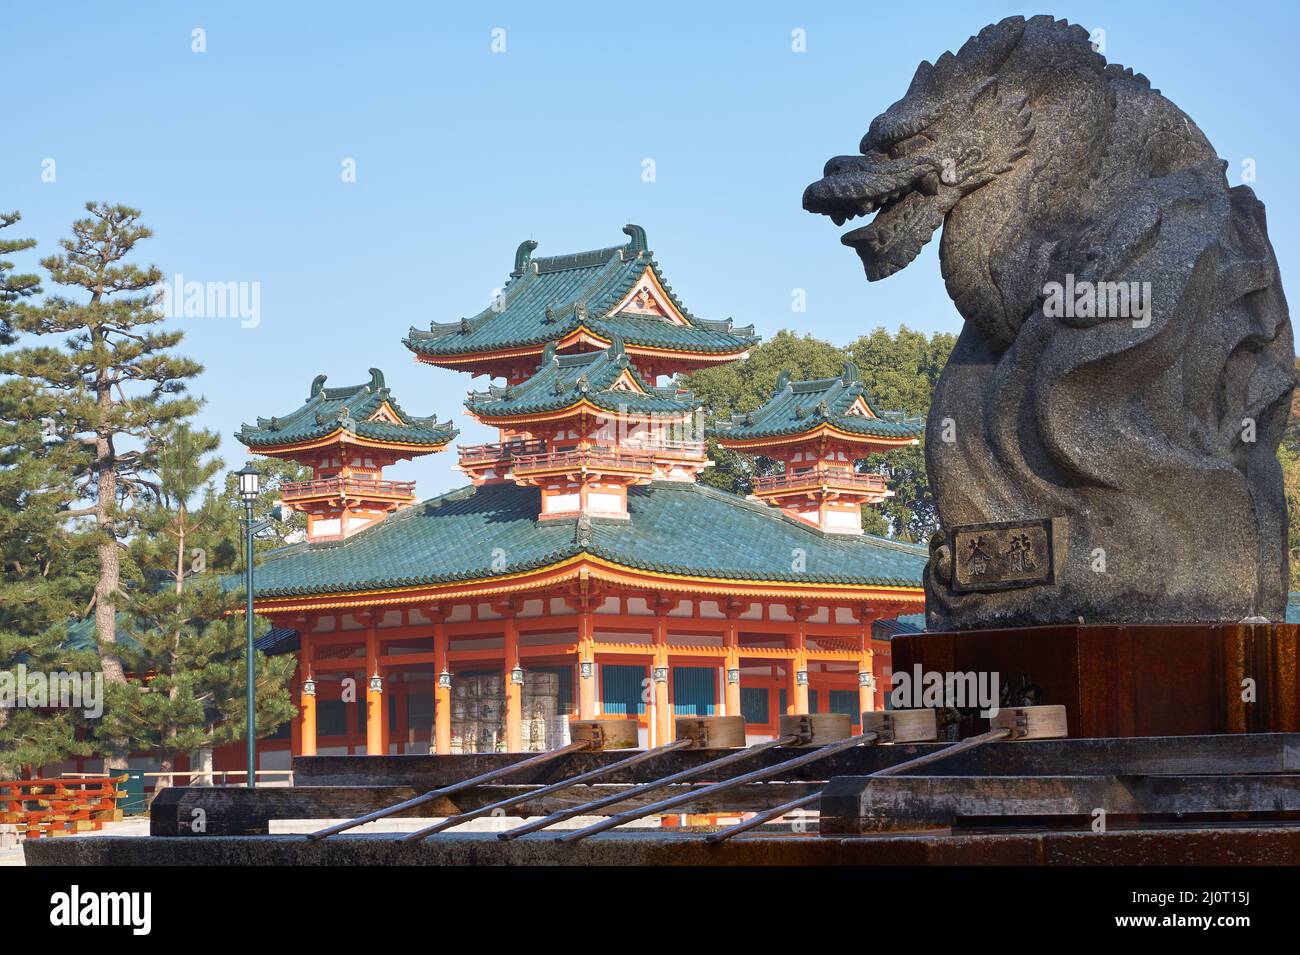 Statua del drago sopra il bacino di ablazione d'acqua con la torre Byakko-ro del Santuario di Heian-jingu. Kyoto. Giappone Foto Stock